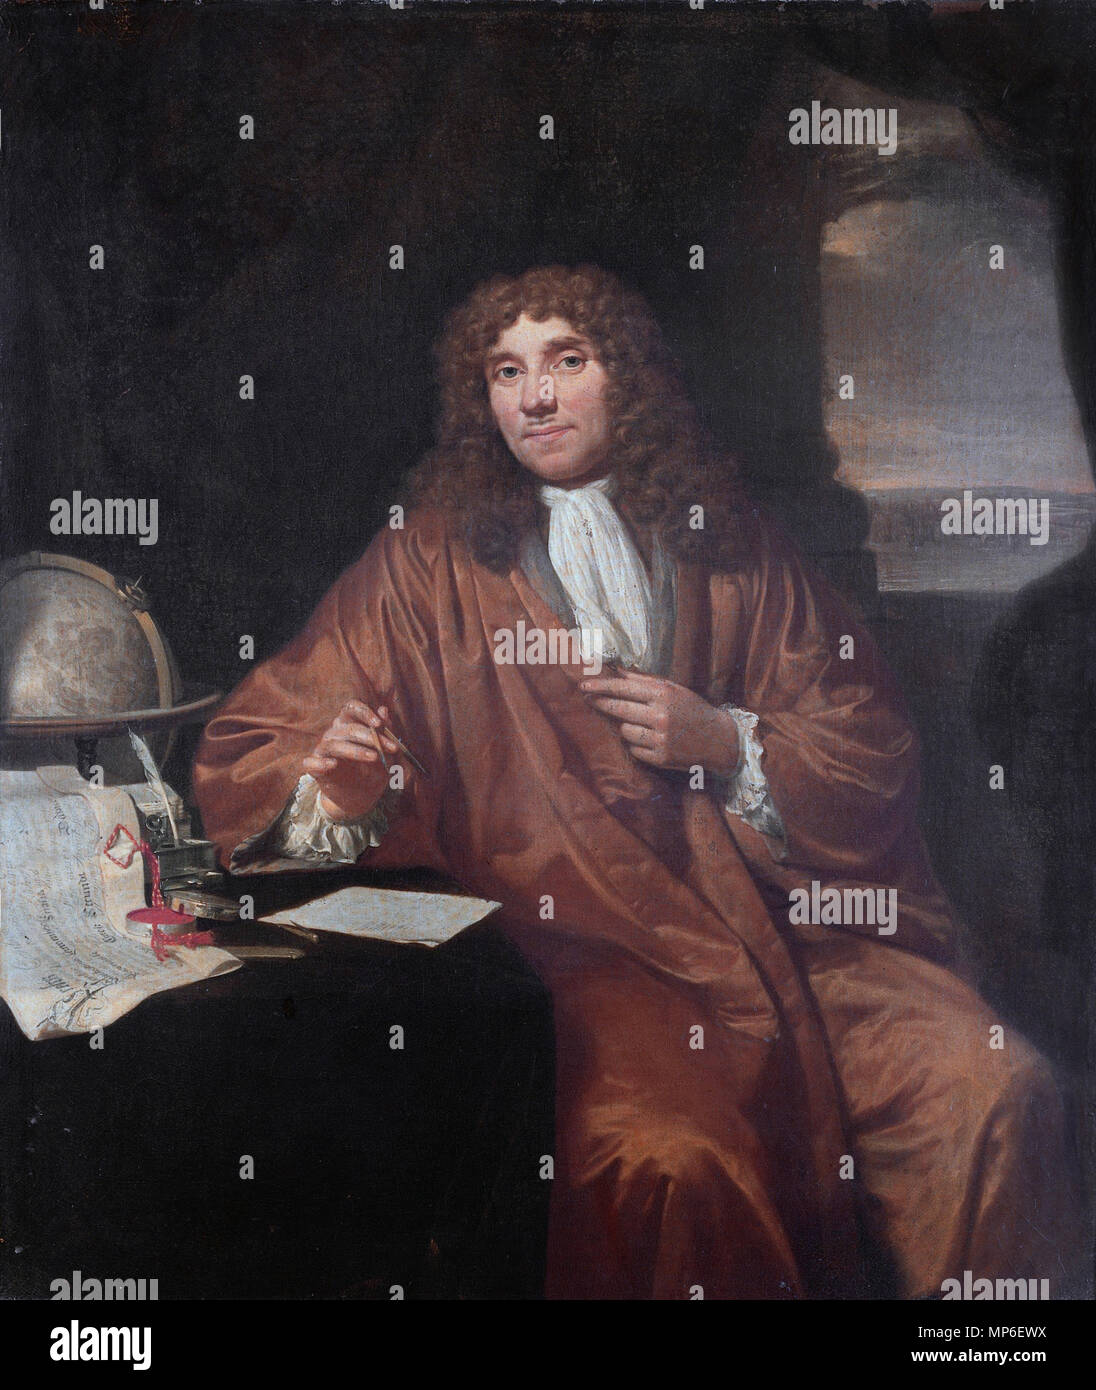 Anthonie van Leeuwenhoek (1632-1723) *oil on canvas *56 × 47,5 cm *1650 - 1723 Anthonie van Leeuwenhoek (1632-1723), by Jan Verkolje (I) 705 Jan Verkolje - Antonie van Leeuwenhoek Stock Photo